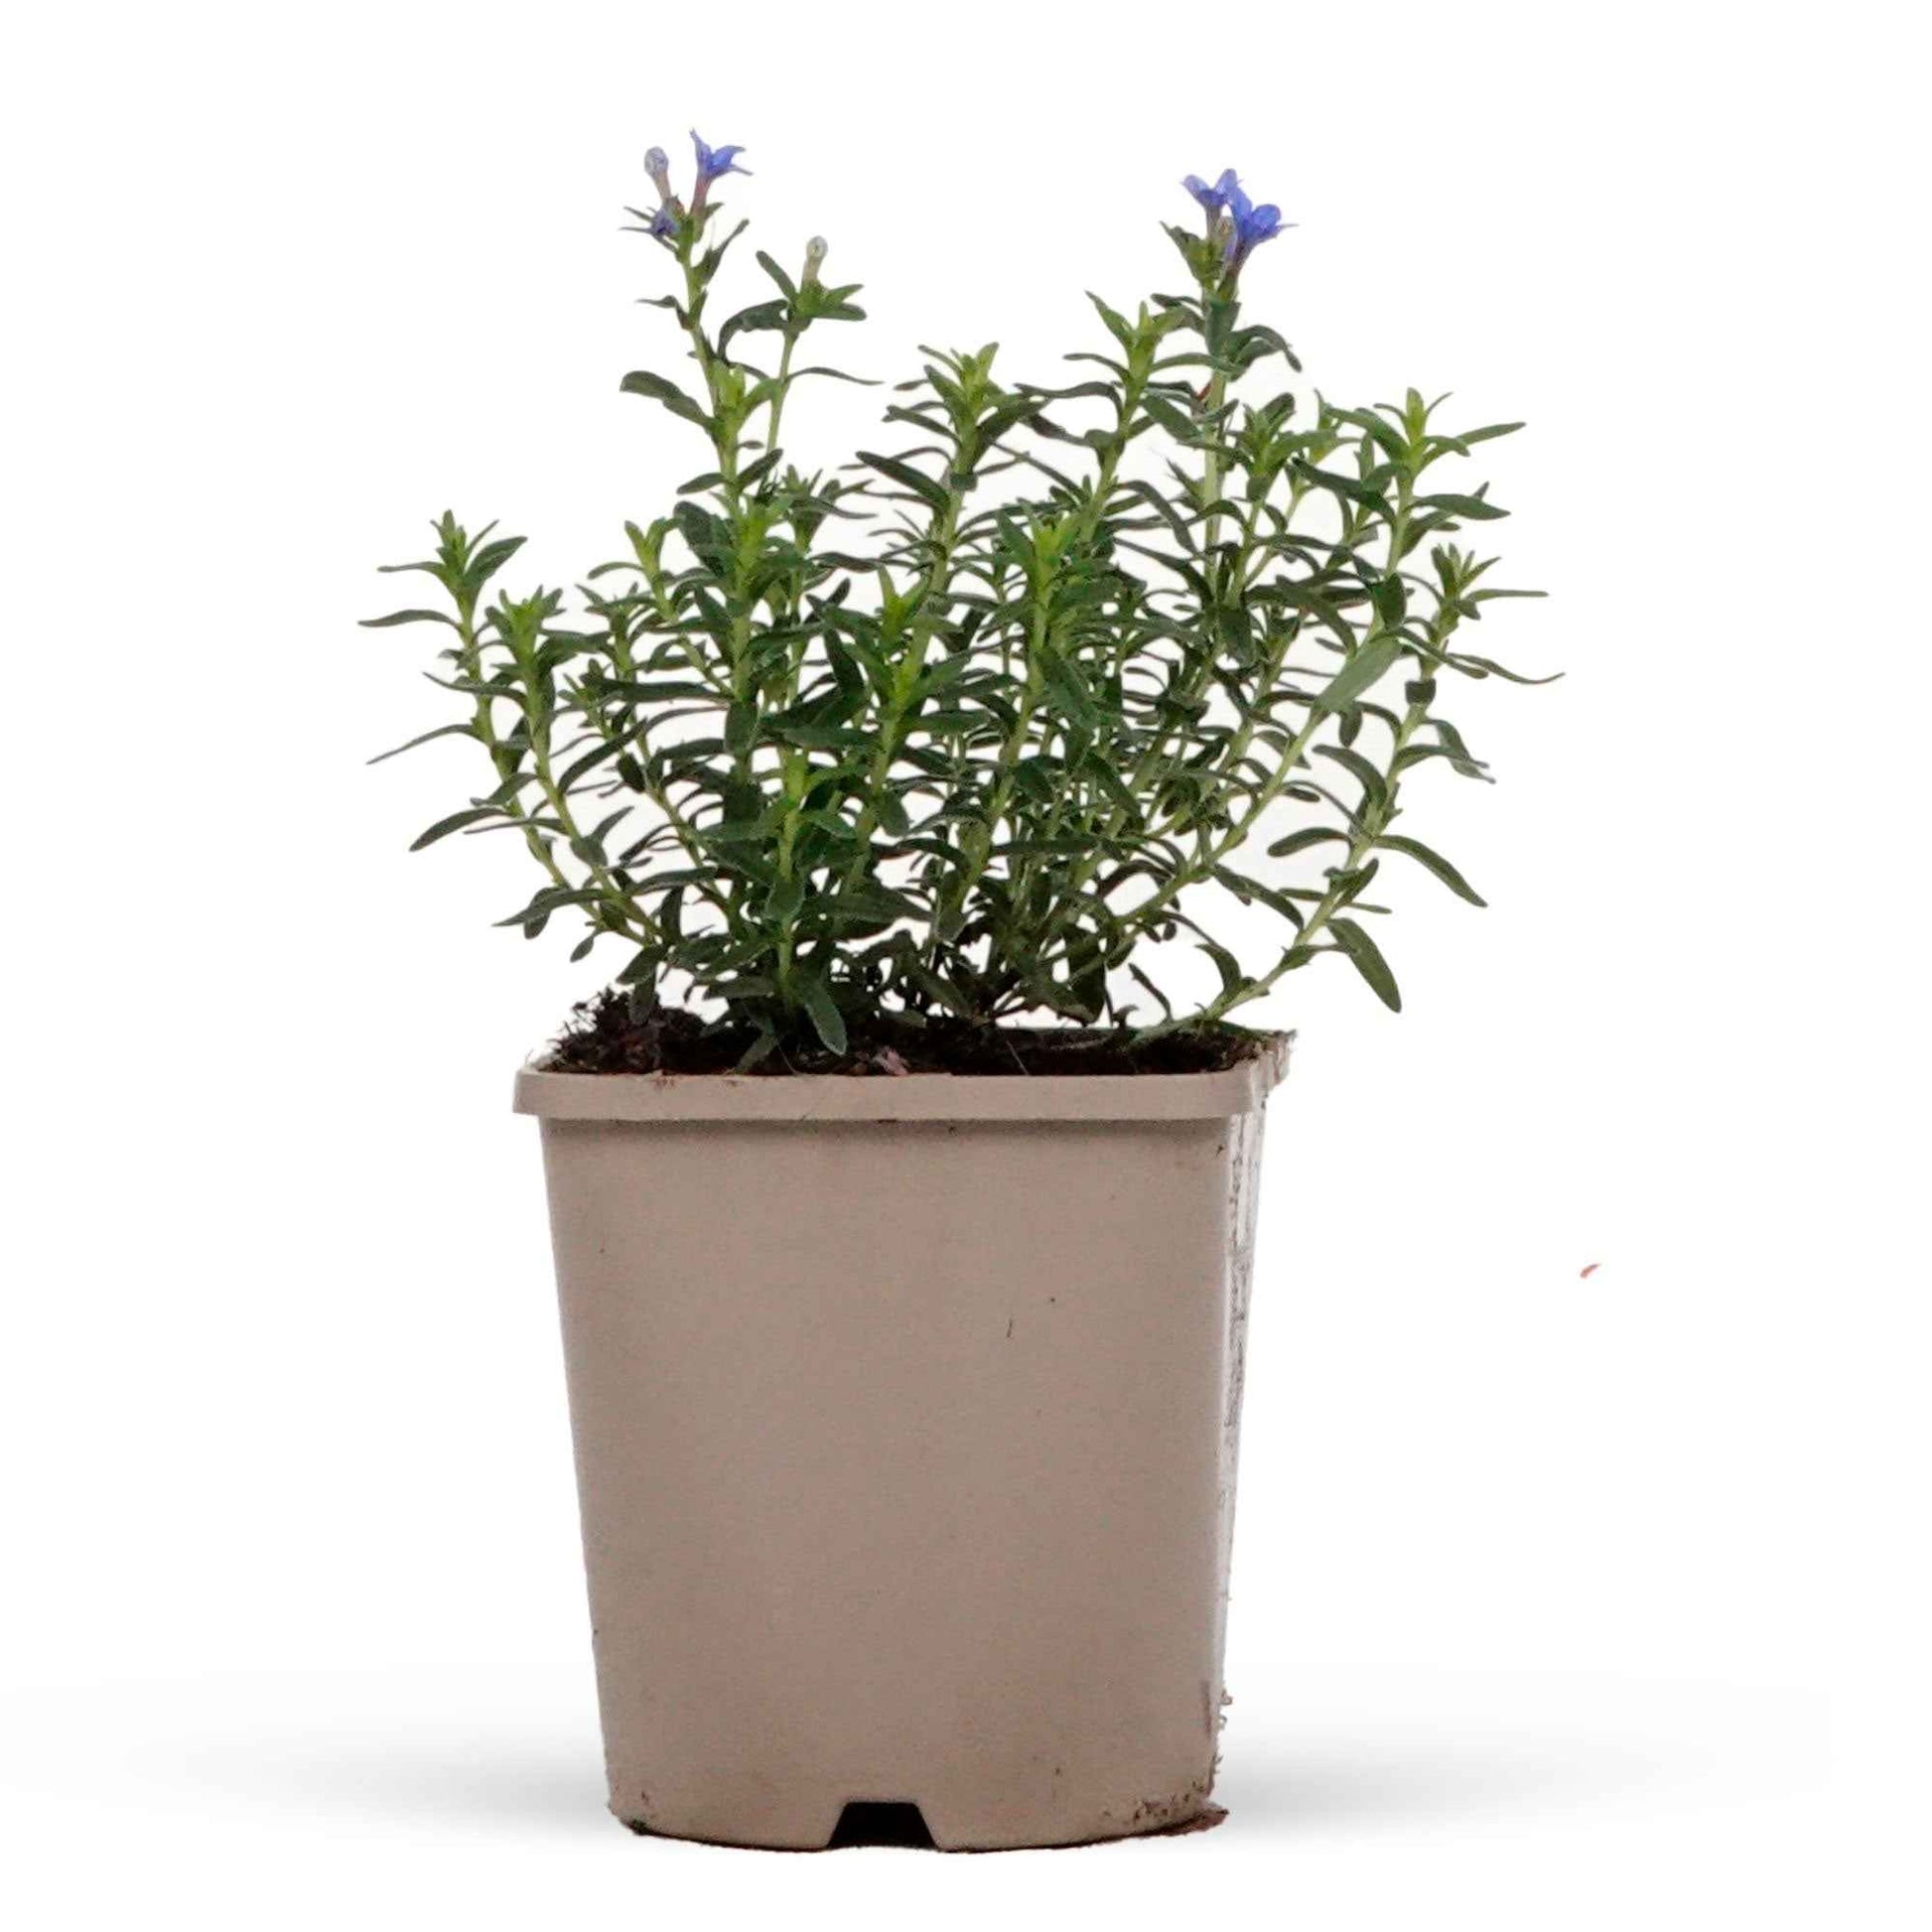 Grémil Heavenly Blue - 1x hauteur de livraison 25-35 cm, pot de Diamètre 12,5 cm - Caractéristiques des plantes - undefined